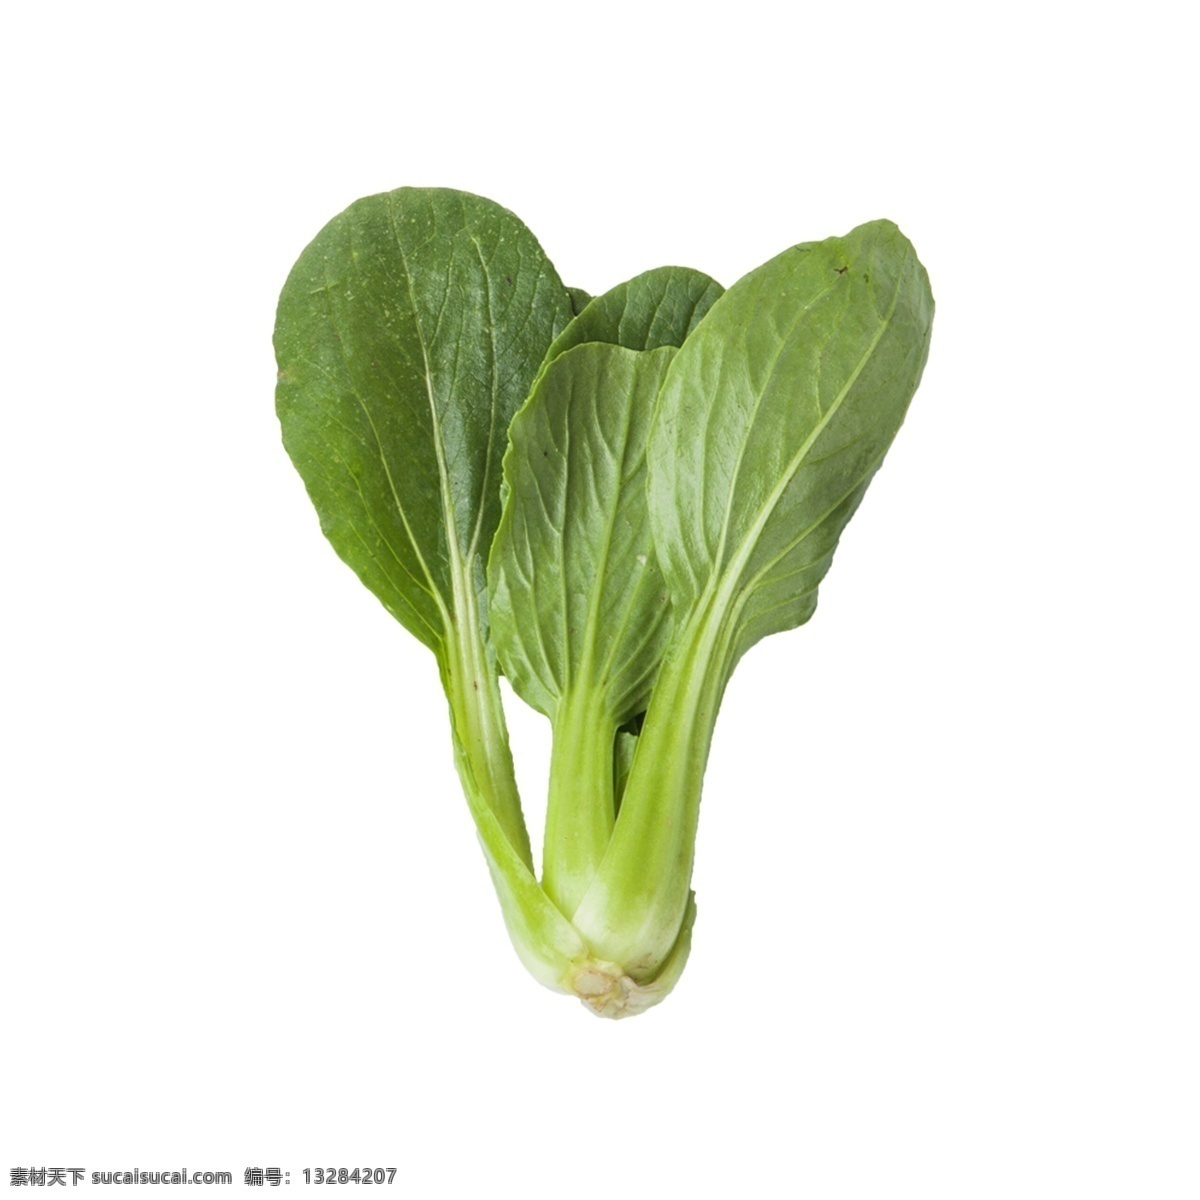 青菜 免 抠 一棵青菜 有营养的青菜 一棵青菜免抠 绿色食品 绿叶菜 小青菜 好吃的蔬菜 蔬菜